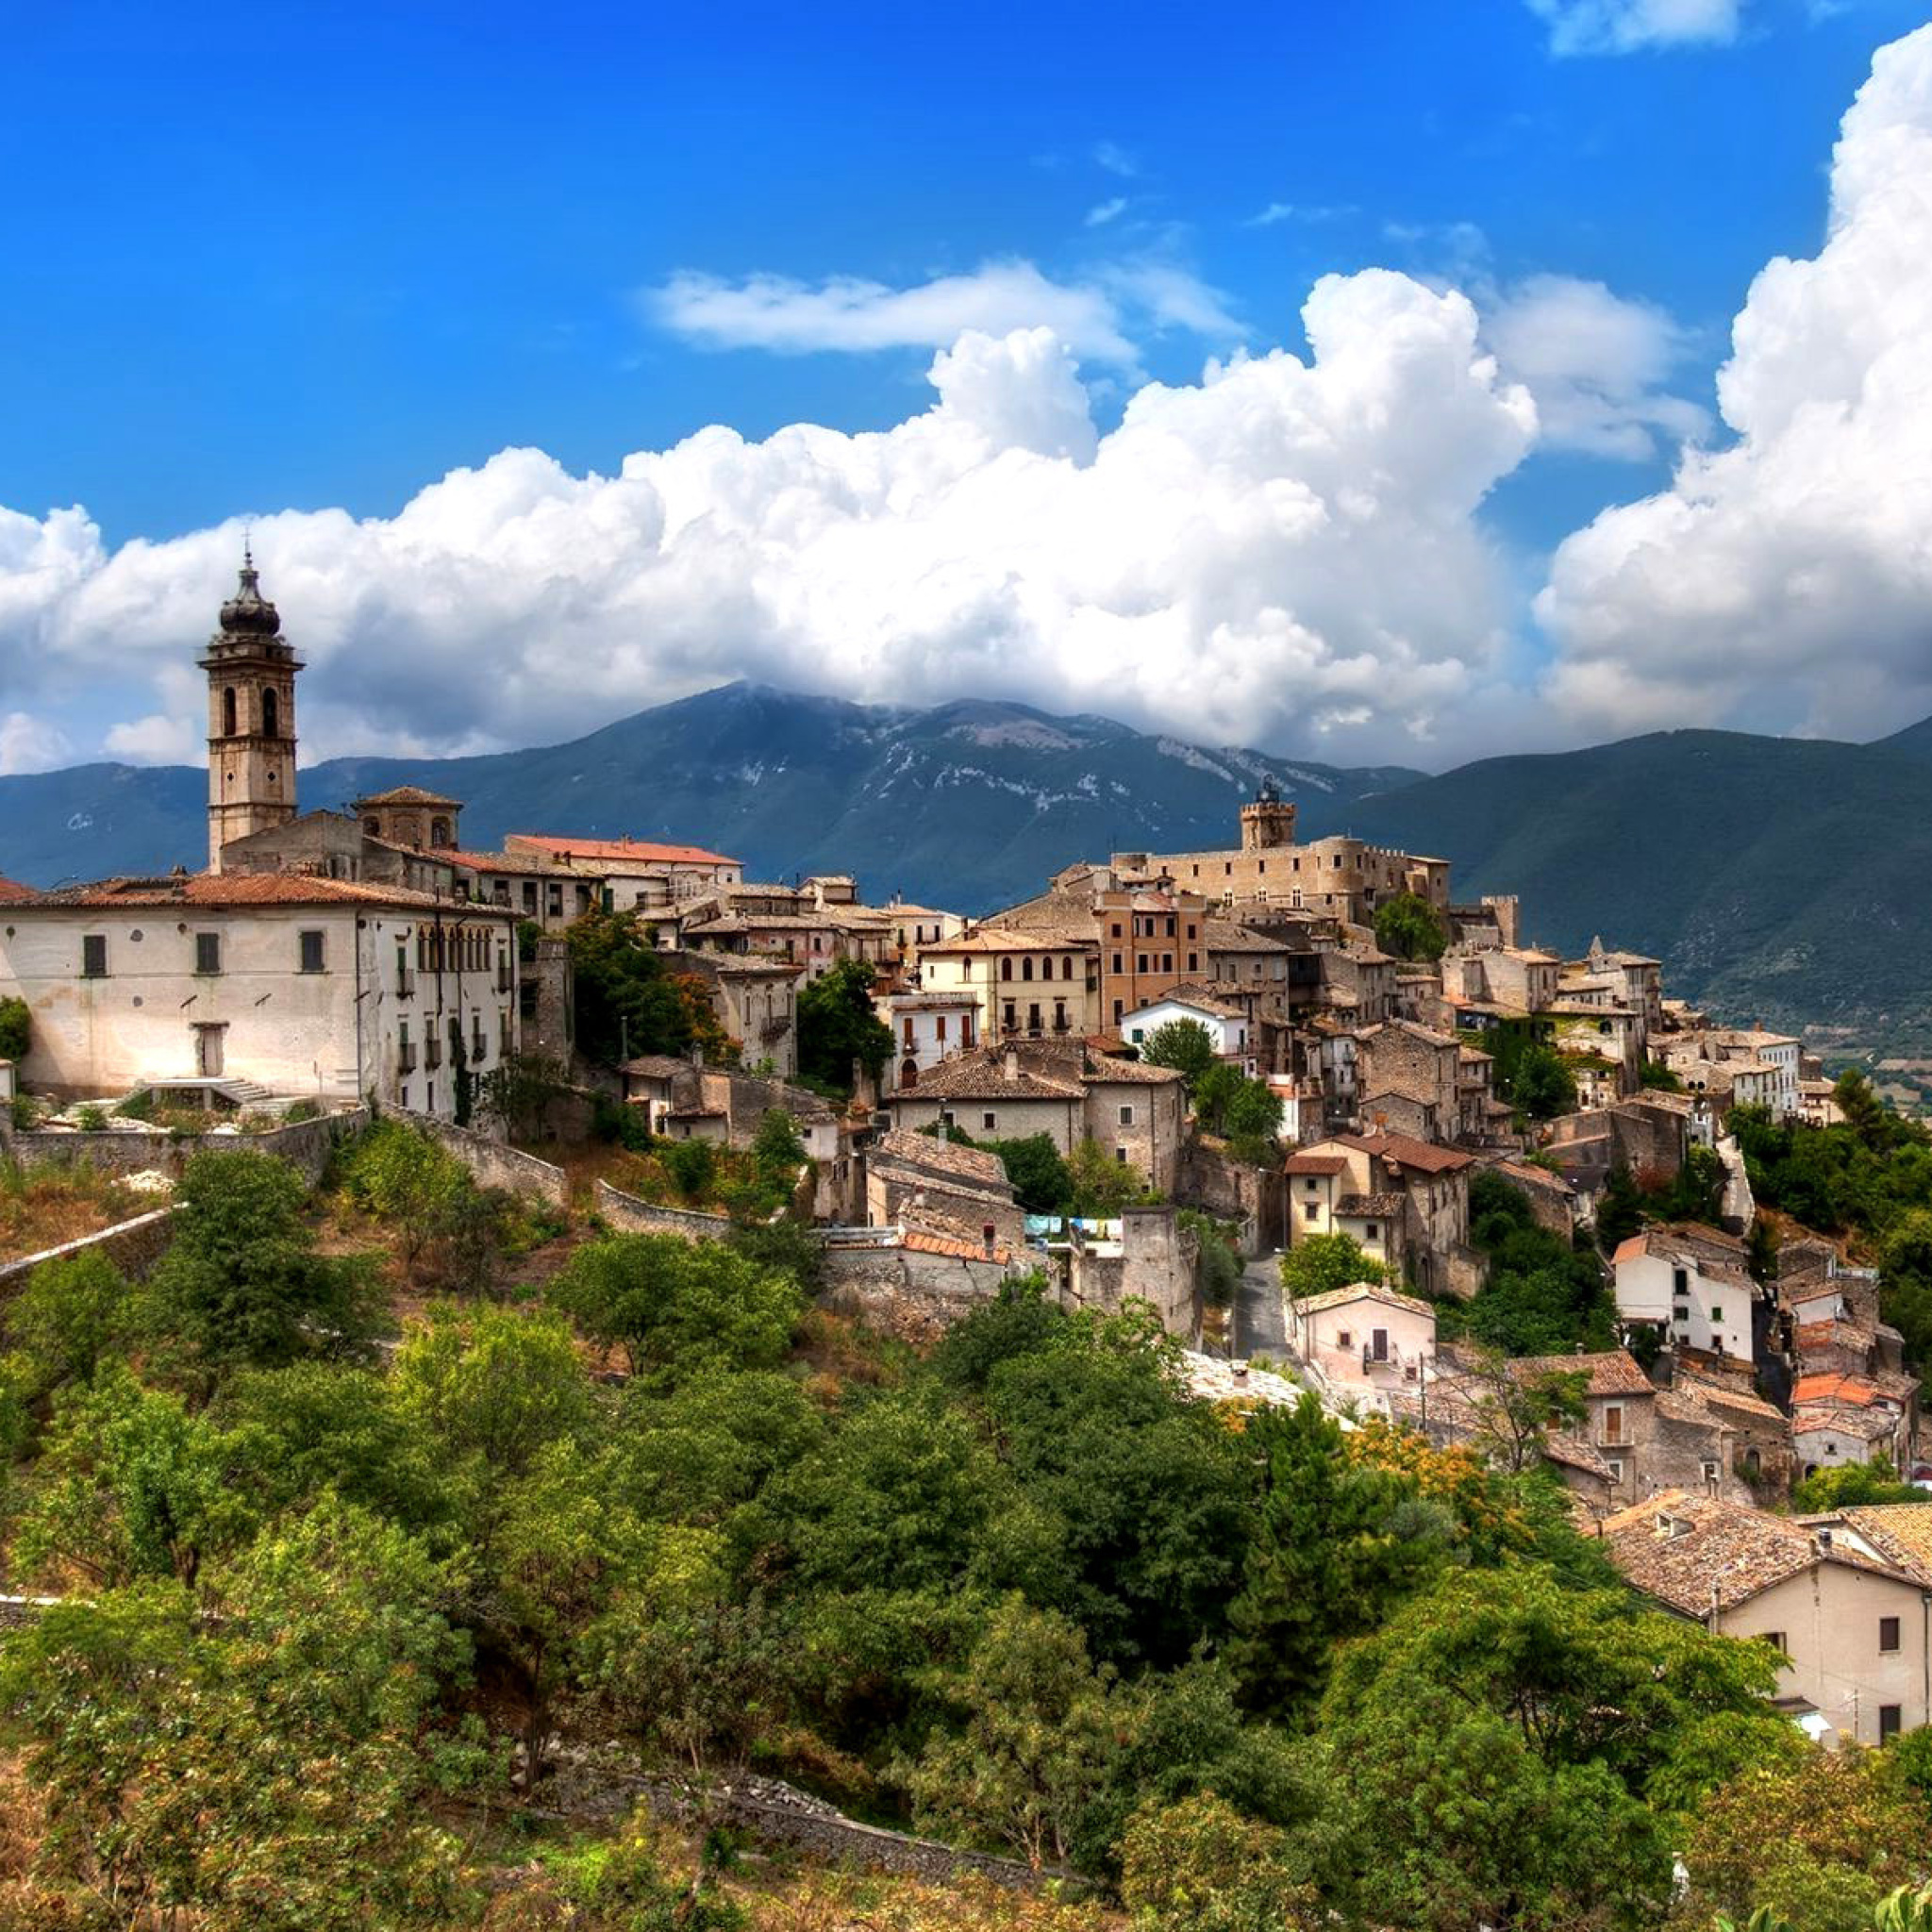 Capestrano Comune in Abruzzo screenshot #1 2048x2048